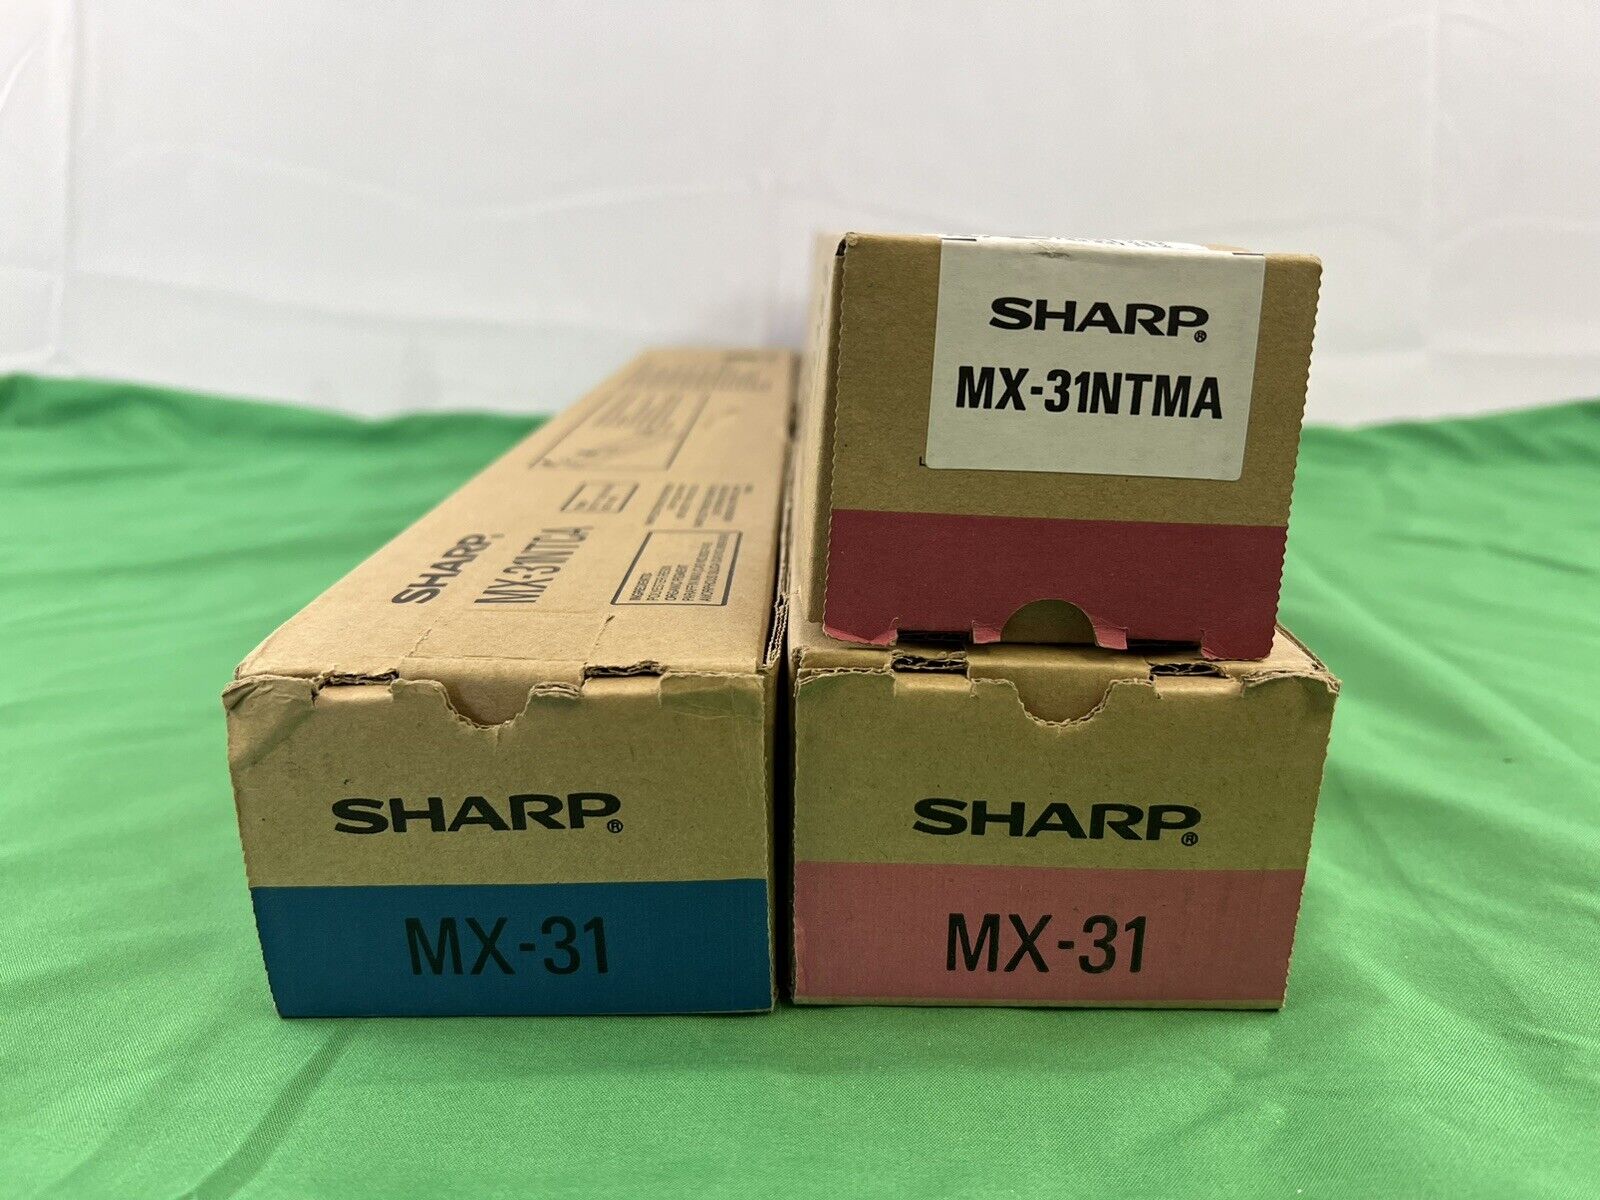 Lot of 3 New OEM Sharp MX-31NT Toner Cartridges Two 31NTMA & One 31NTCA